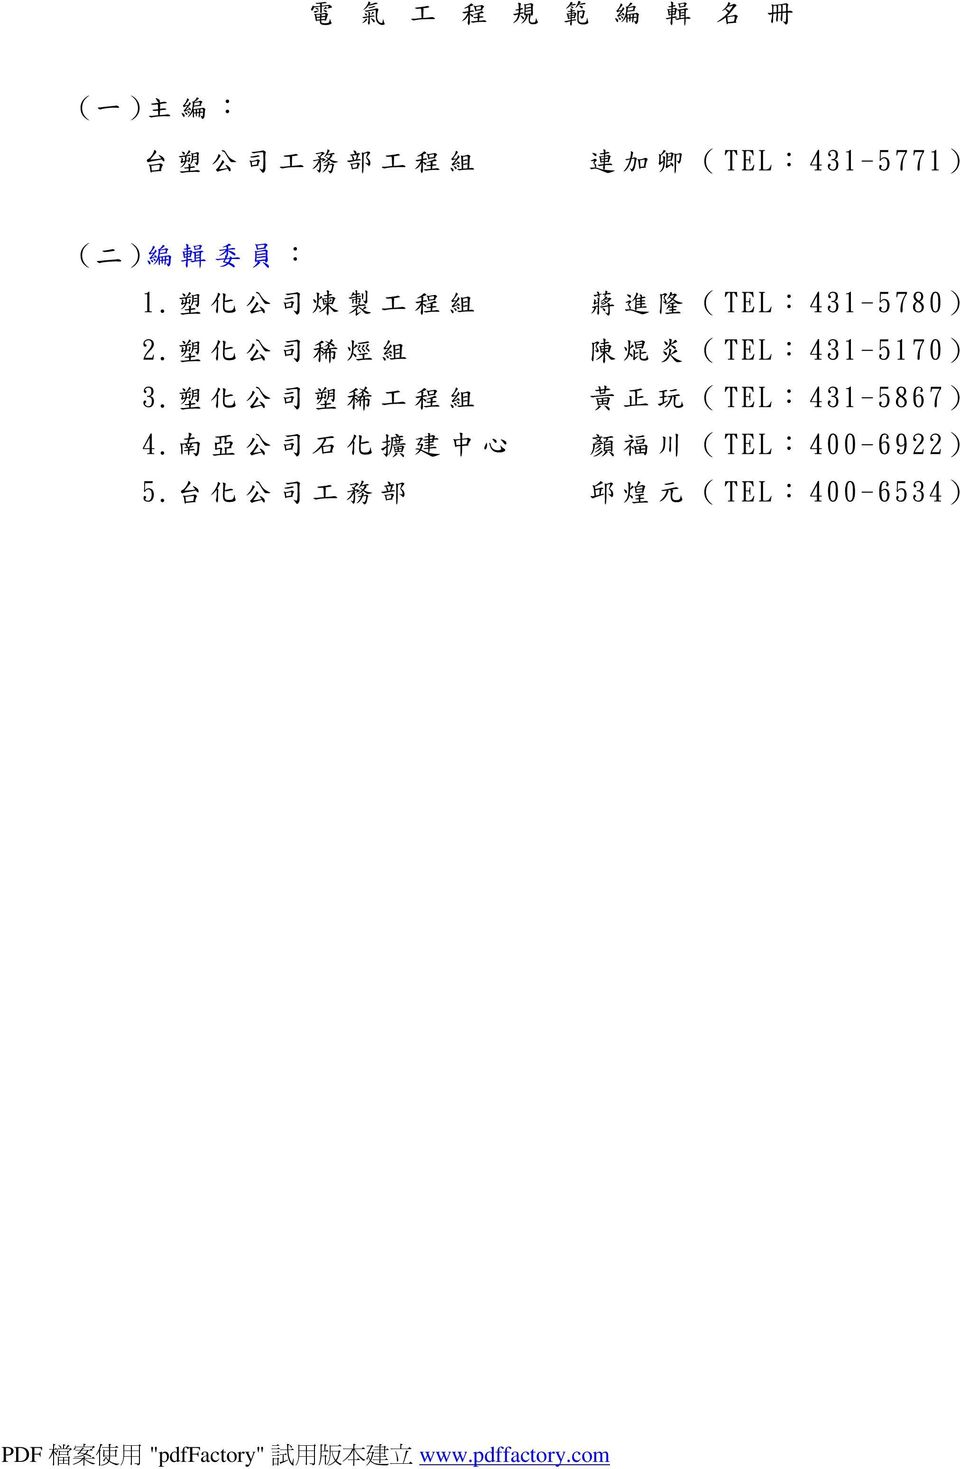 塑 化 公 司 稀 烴 組 陳 焜 炎 (TEL:431-5170) 3.